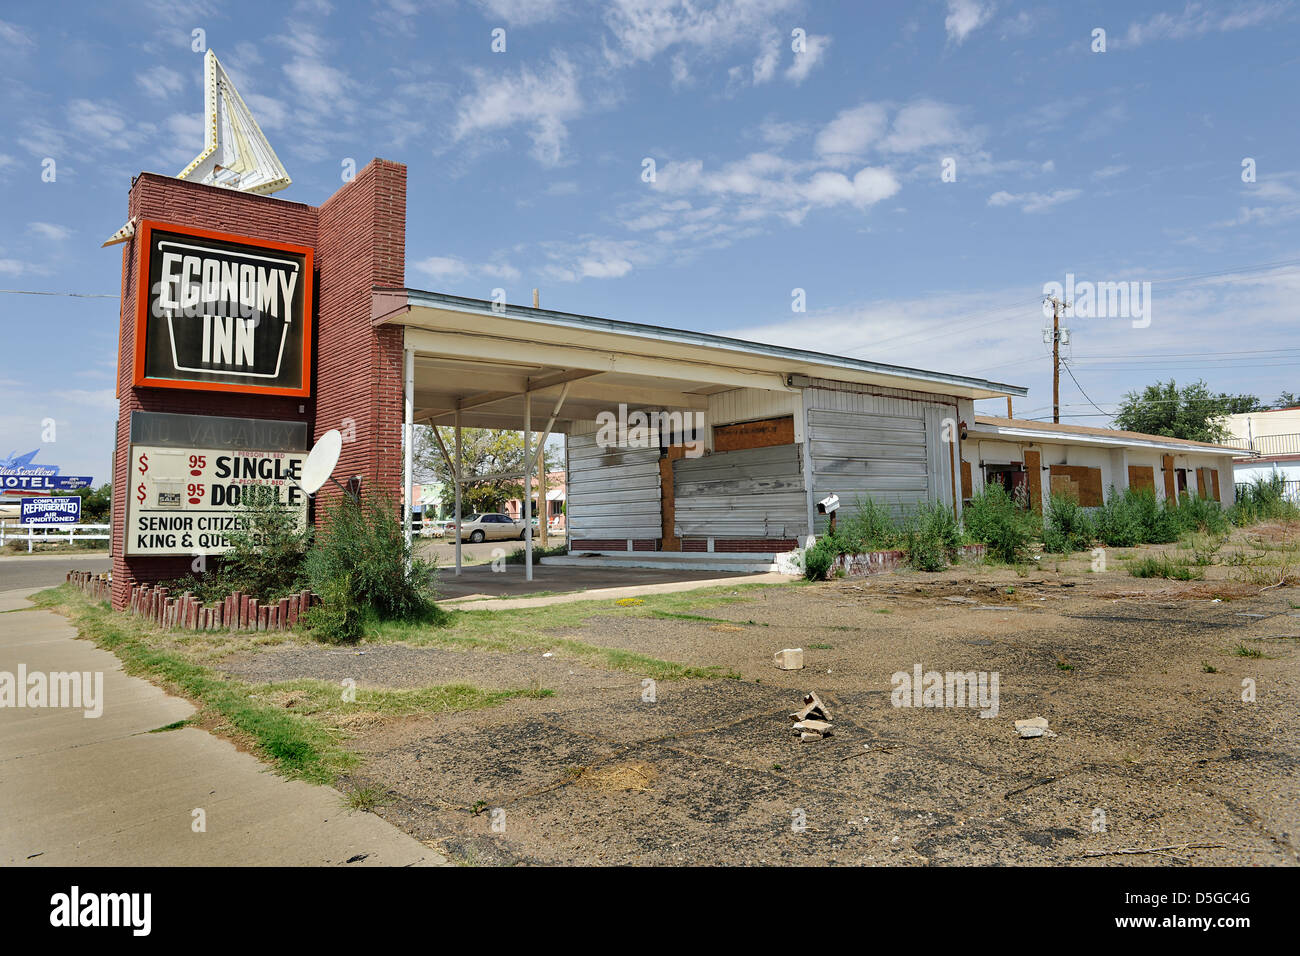 Economy Inn Motel, Tucumcari, New Mexico. Derelict abandoned roadside motel. Route 66, USA Stock Photo